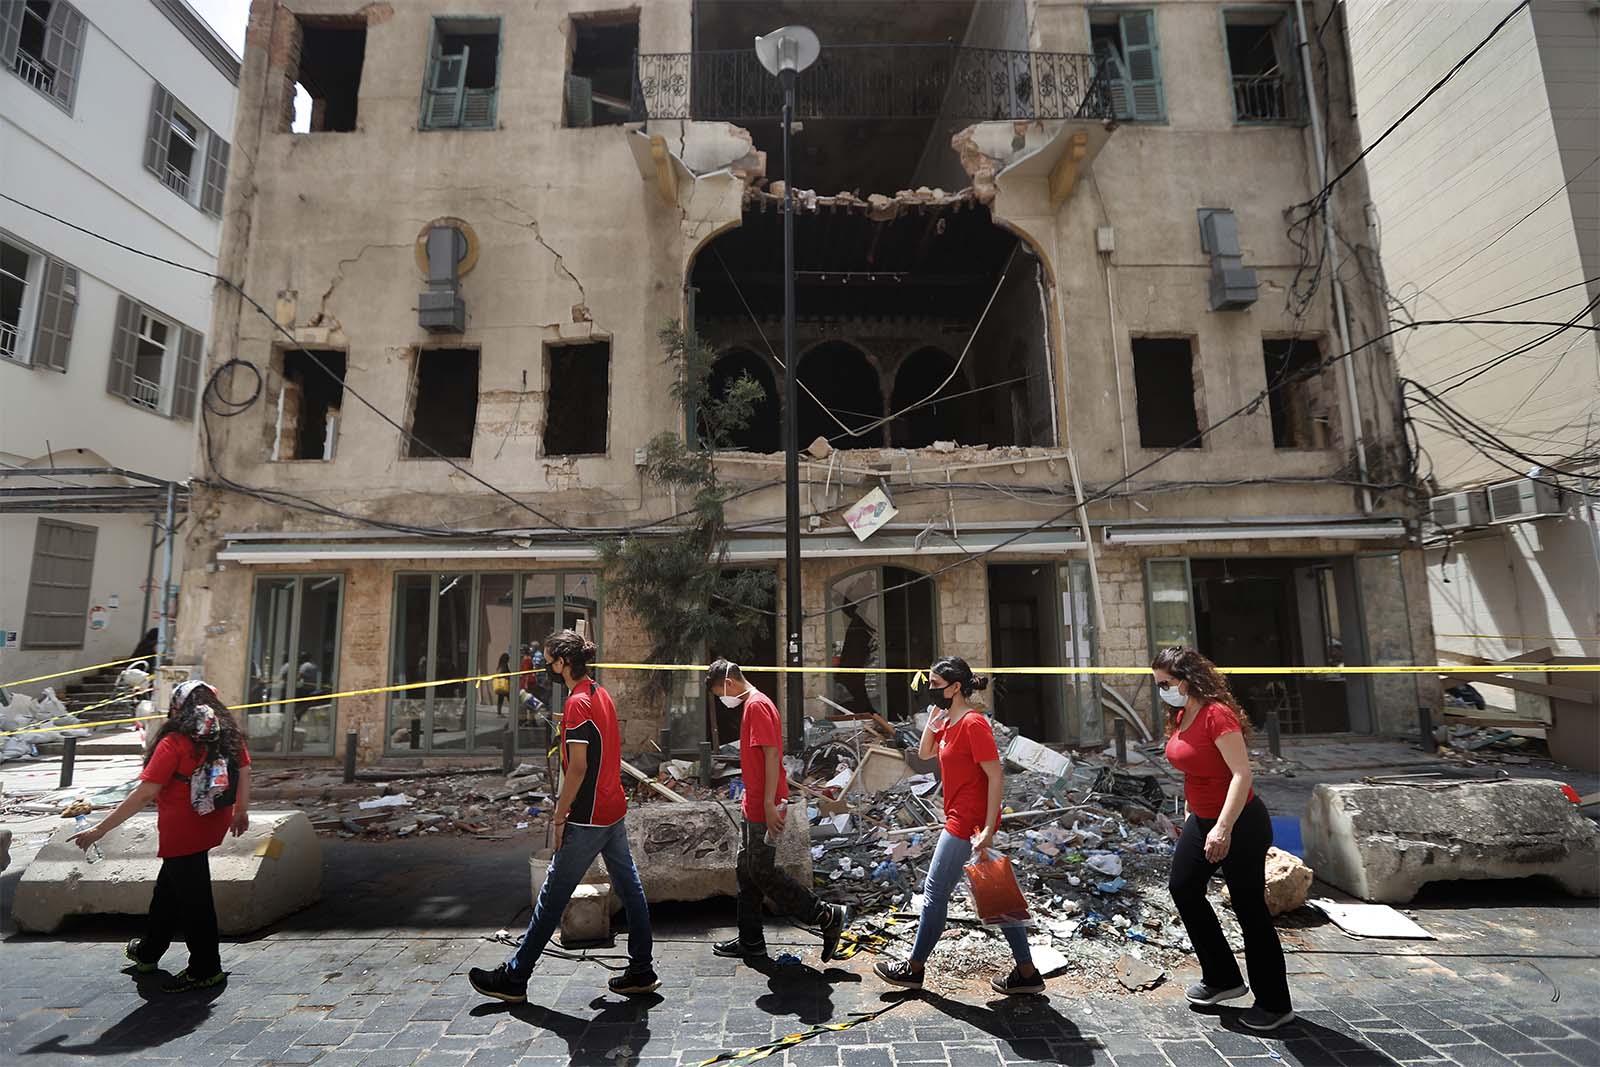 סטודנטים שהתנדבו לסייע בניקיון ההריסות חולפים על פני בניין שנפגע בפיצוץ בנמל ביירות. (צילום: AP Photo/Hussein Malla)